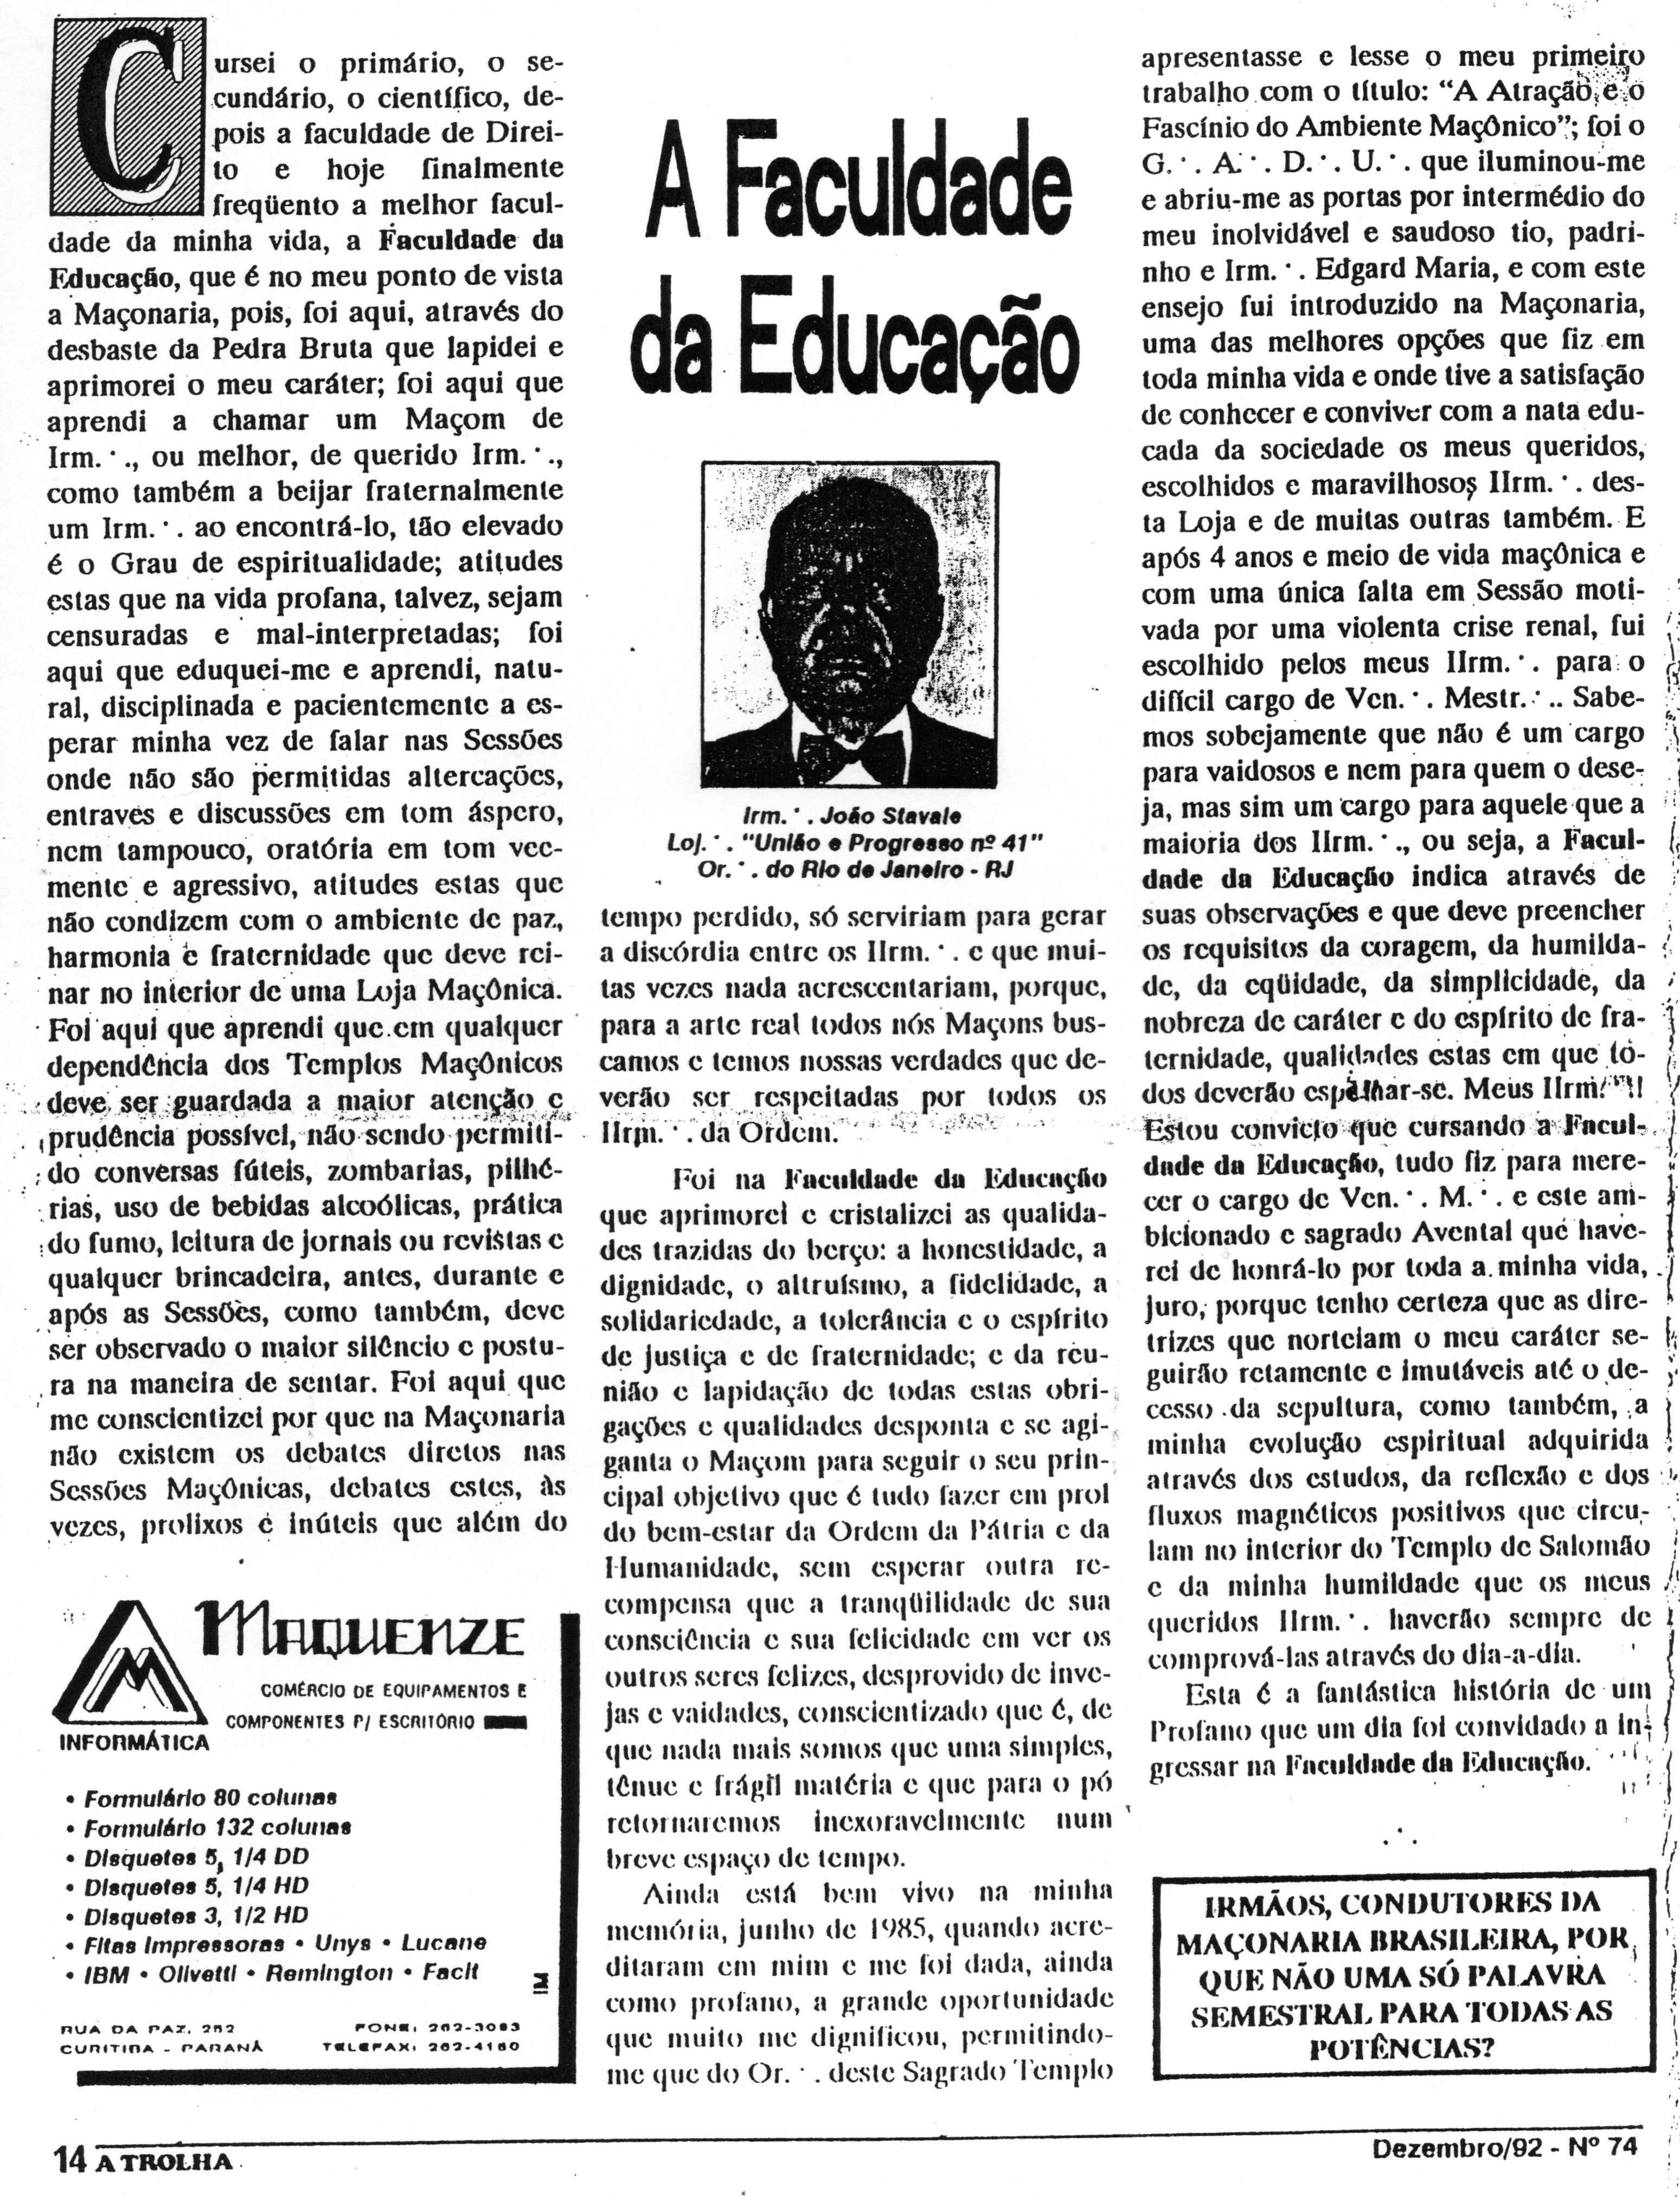 Biografia do Maçom João Stávale